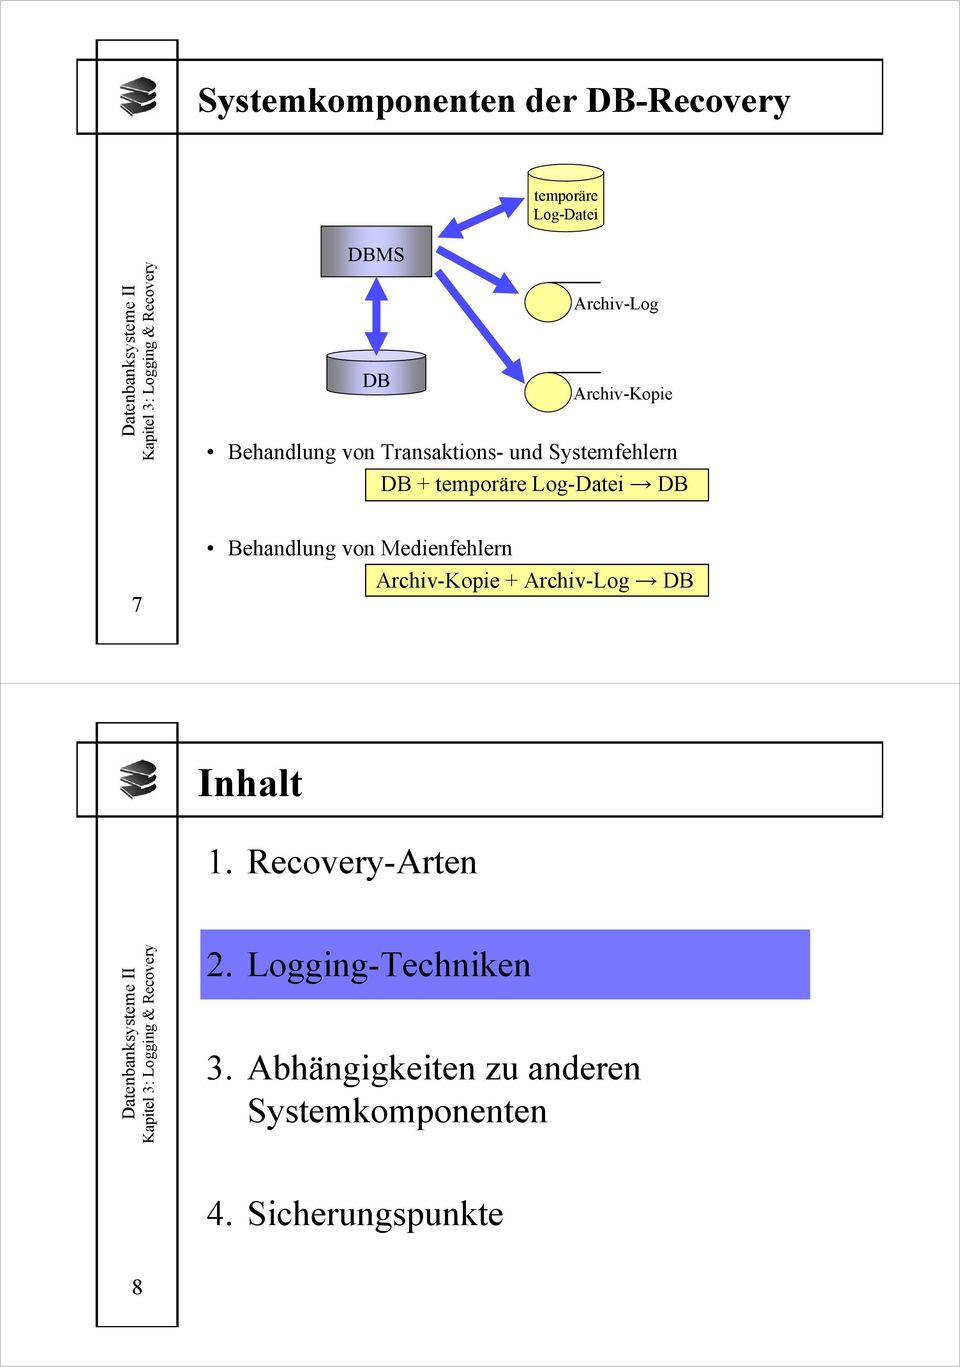 Log-Datei DB 7 Behandlung von Medienfehlern Archiv-Kopie + Archiv-Log DB Inhalt 1.